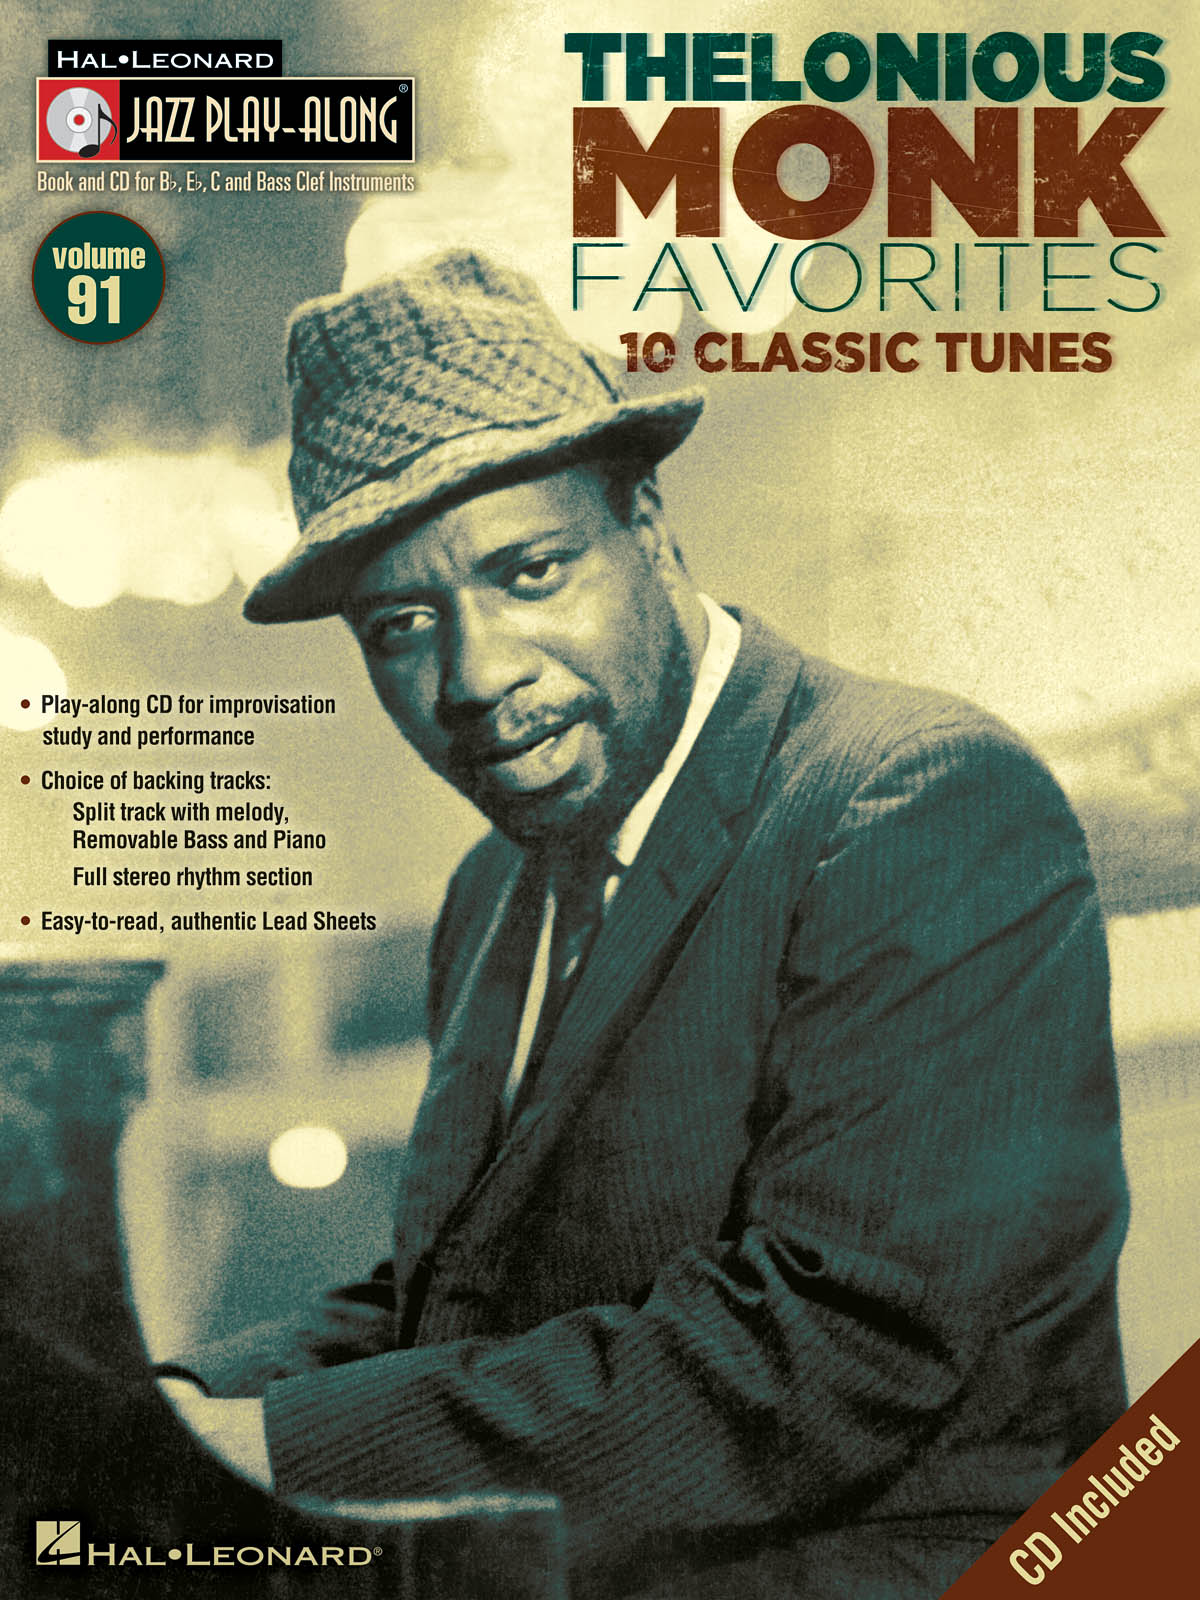 Thelonious Monk Favorites - Jazz Play-Along Volume 91 - noty pro nástroje v ladění C